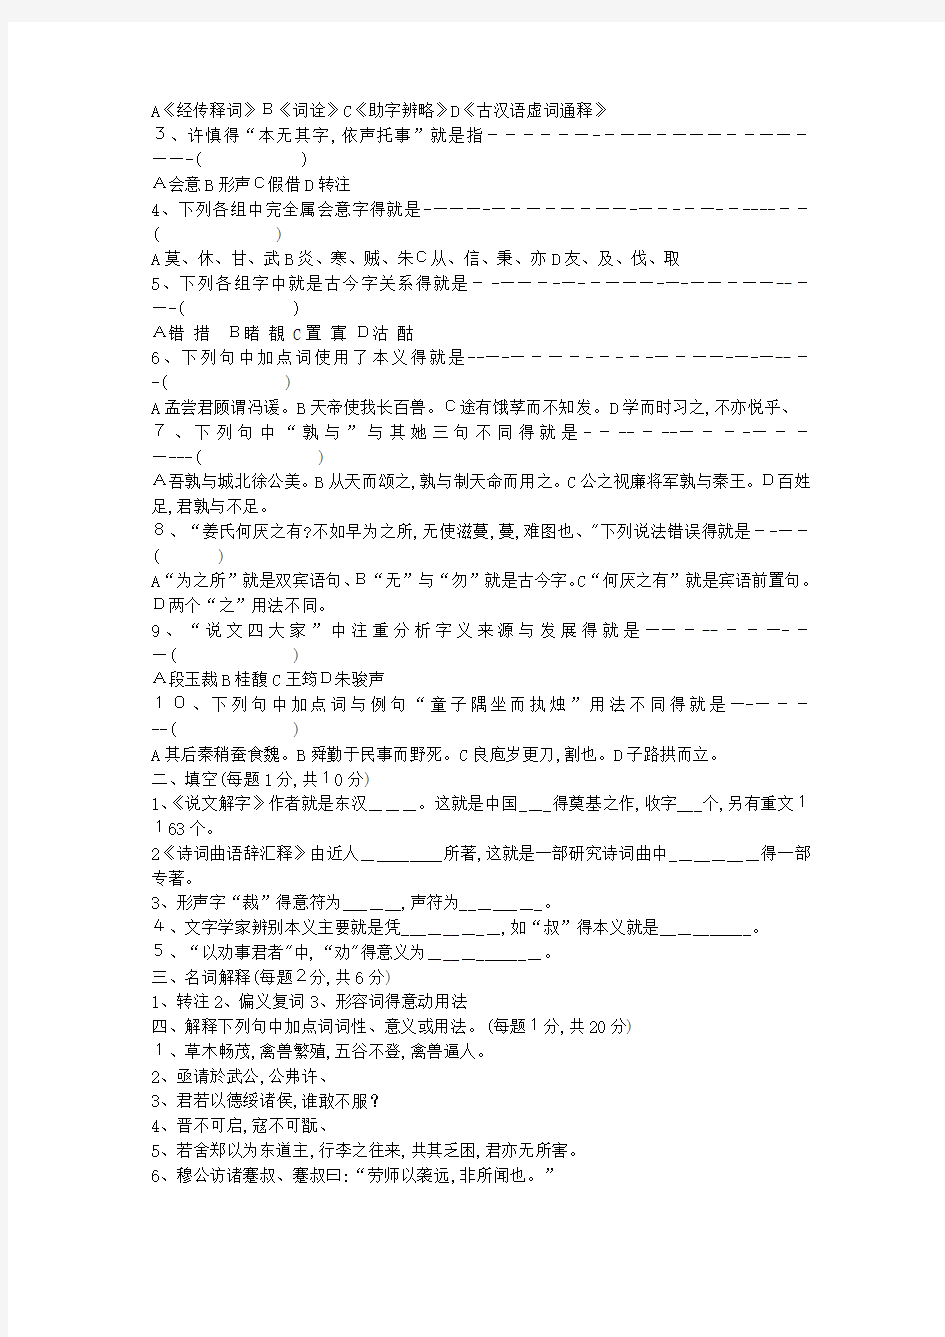 古代汉语试题10套及答案